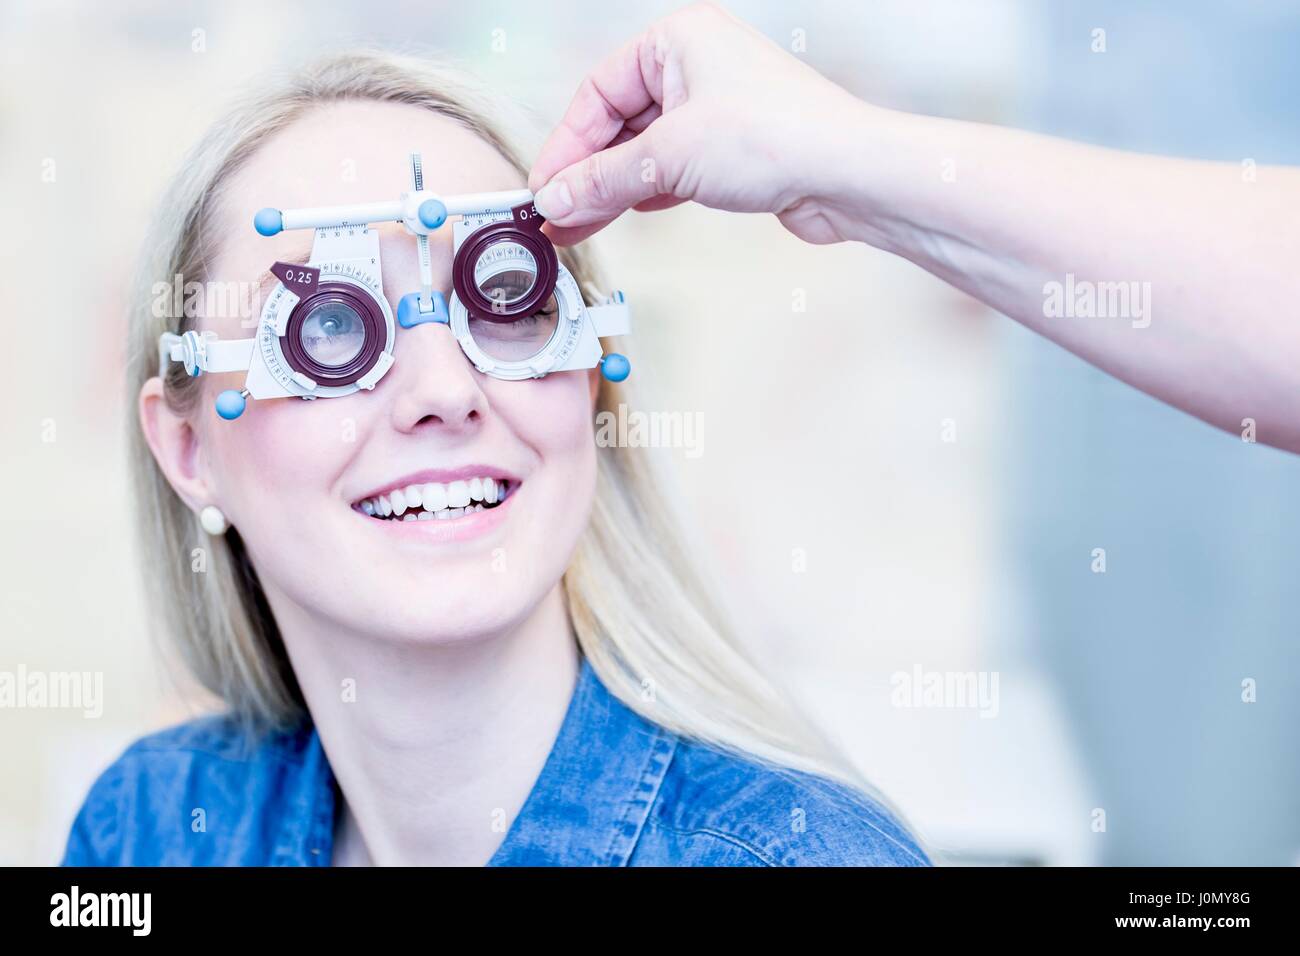 Allegro giovane donna con occhio in esame all'ottico optometrista del negozio, close-up. Foto Stock